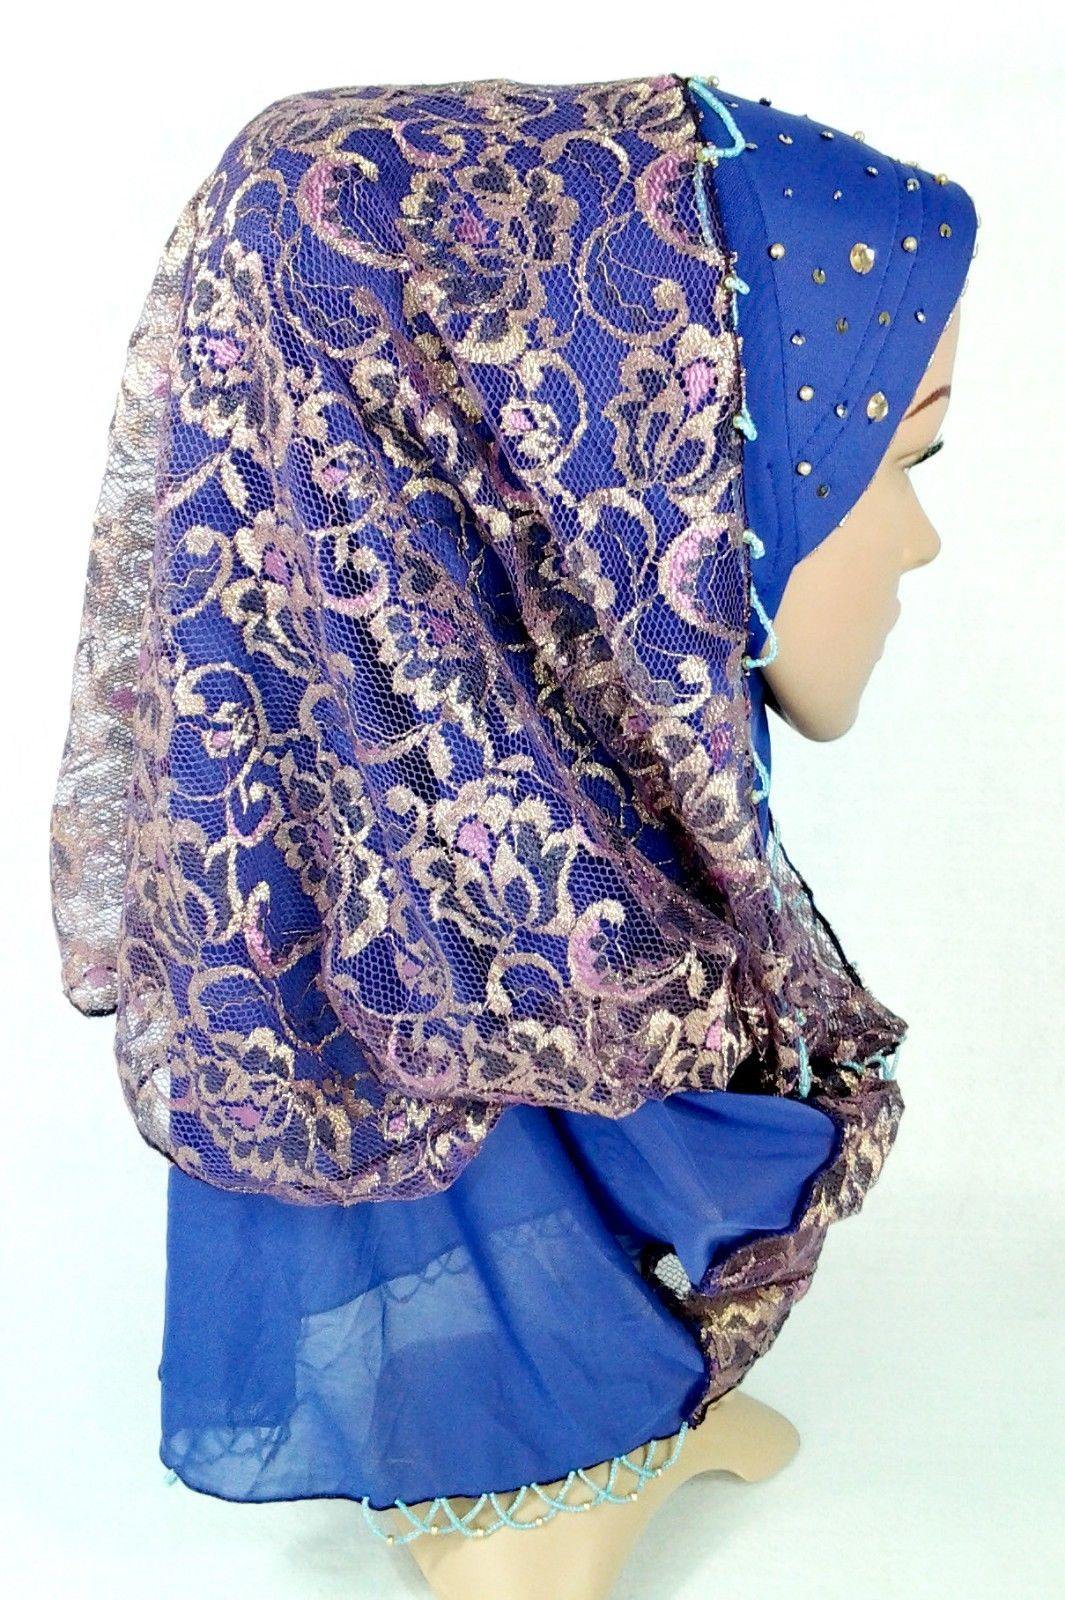 New Lace NET Yarn RhineStone Elegant Loop Hijab Islamic Headwear Scarf Shawls - Arabian Shopping Zone